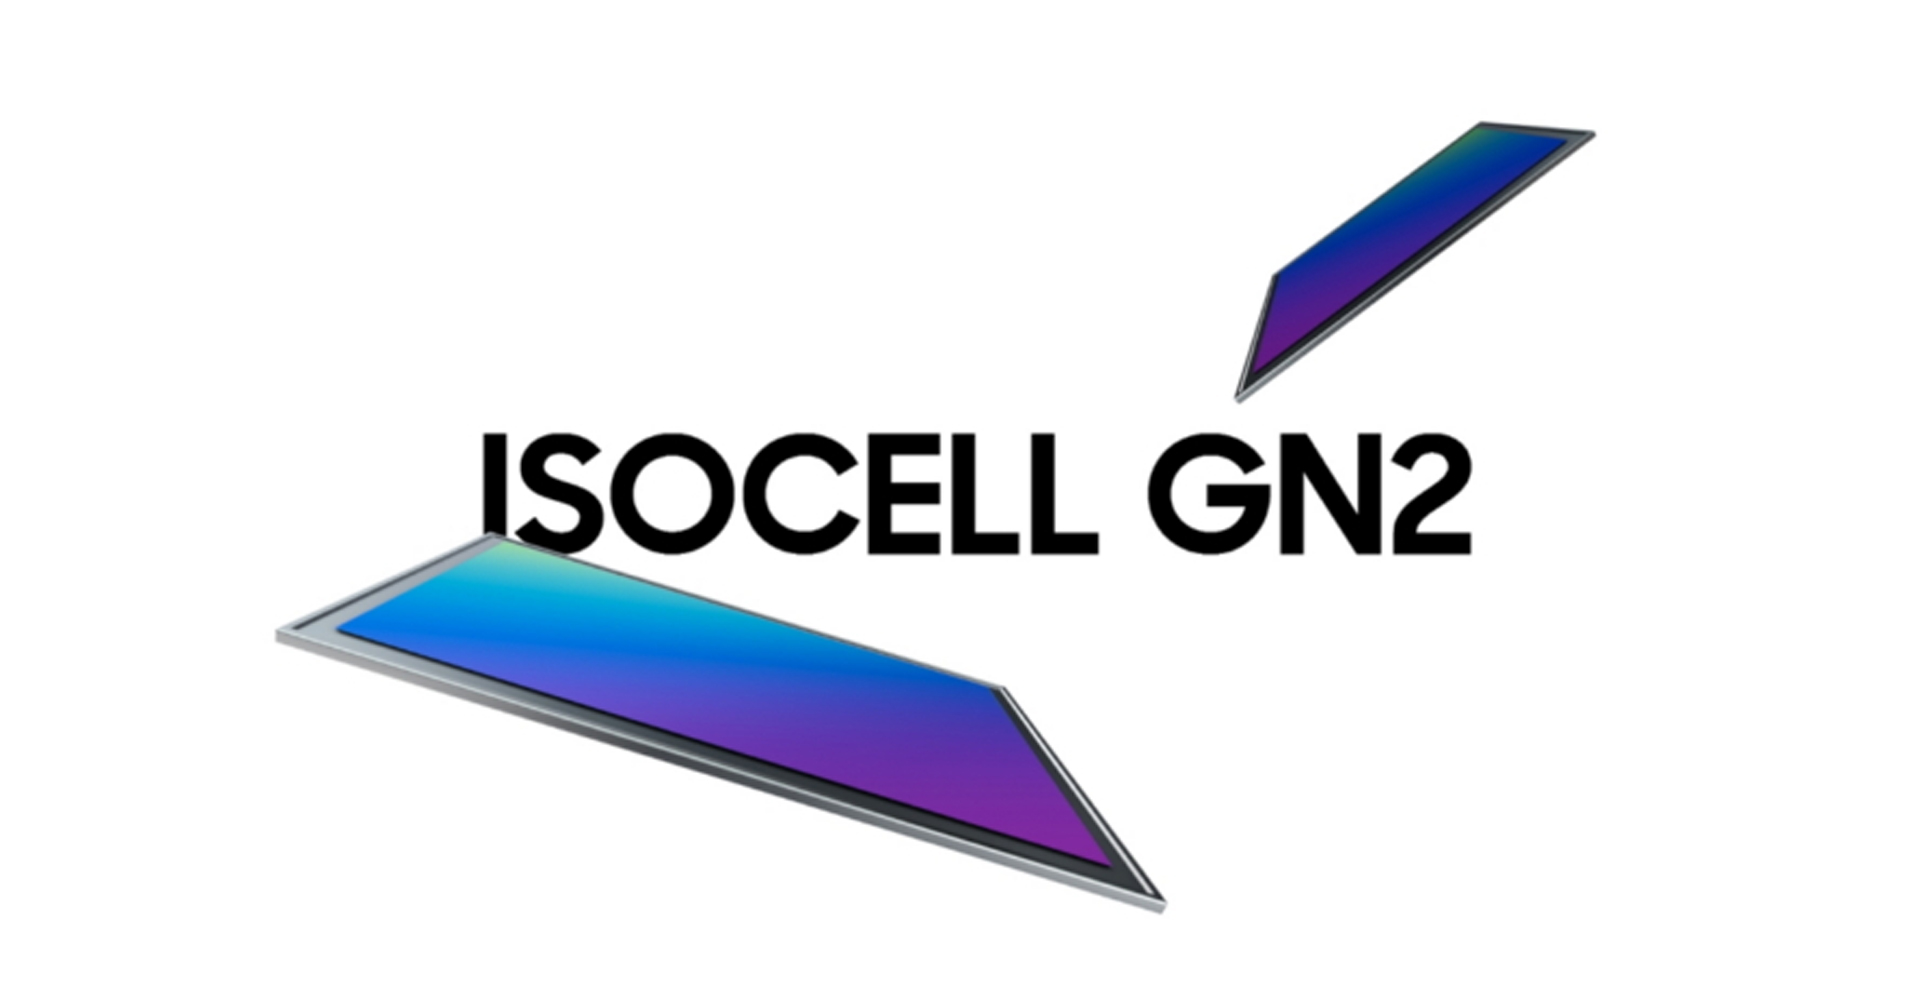 Samsung เปิดตัวเซนเซอร์ ISOCELL GN2 50MP ระบบโฟกัสเร็วขึ้น ถ่ายในที่แสงน้อยได้ดีขึ้น